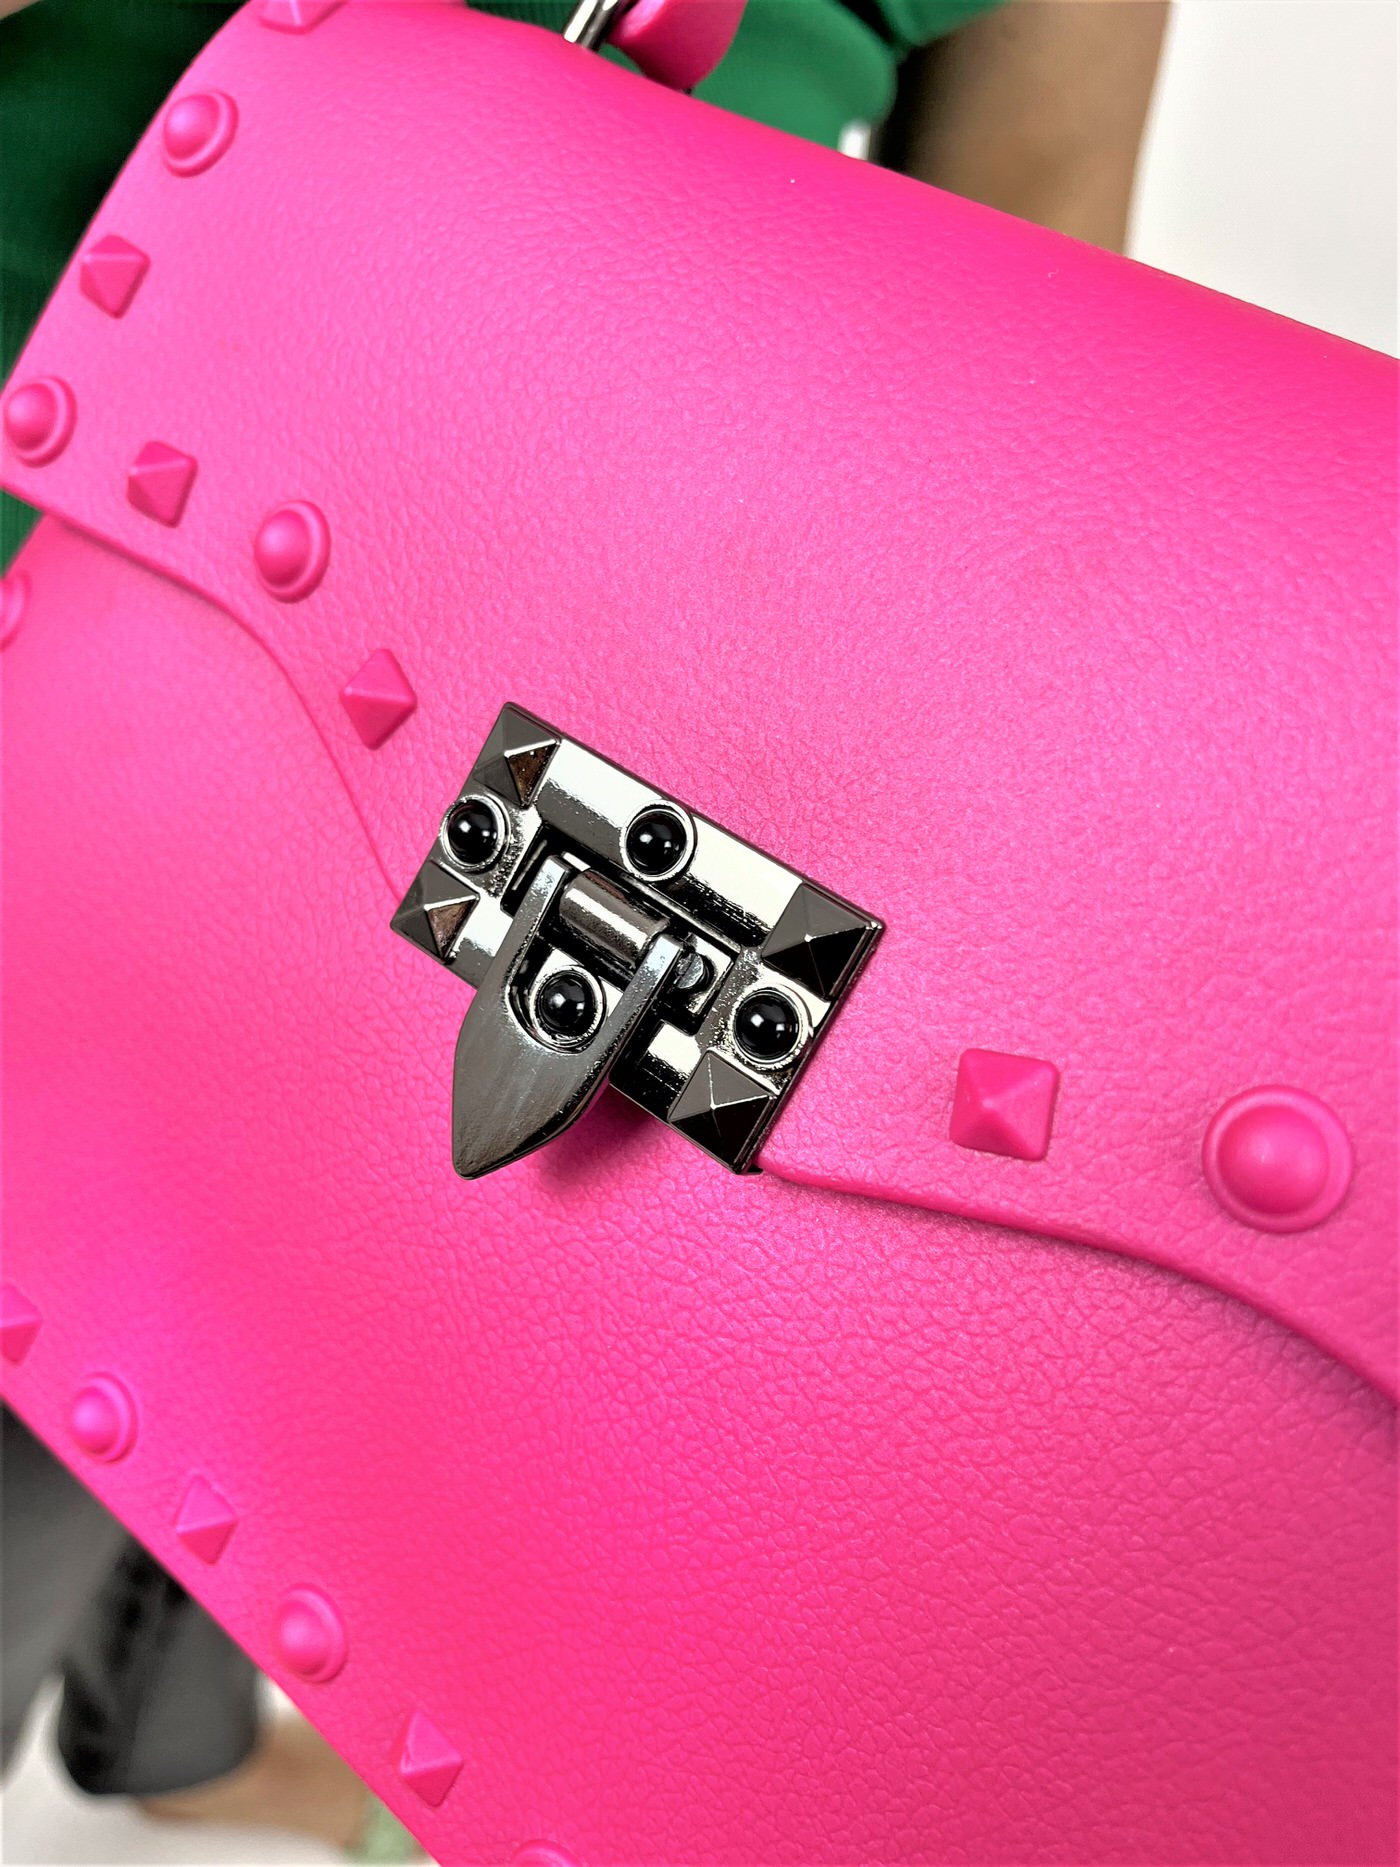 Handtasche für Damen in grellen Farben, Miina Fashion Online Shop, Pink